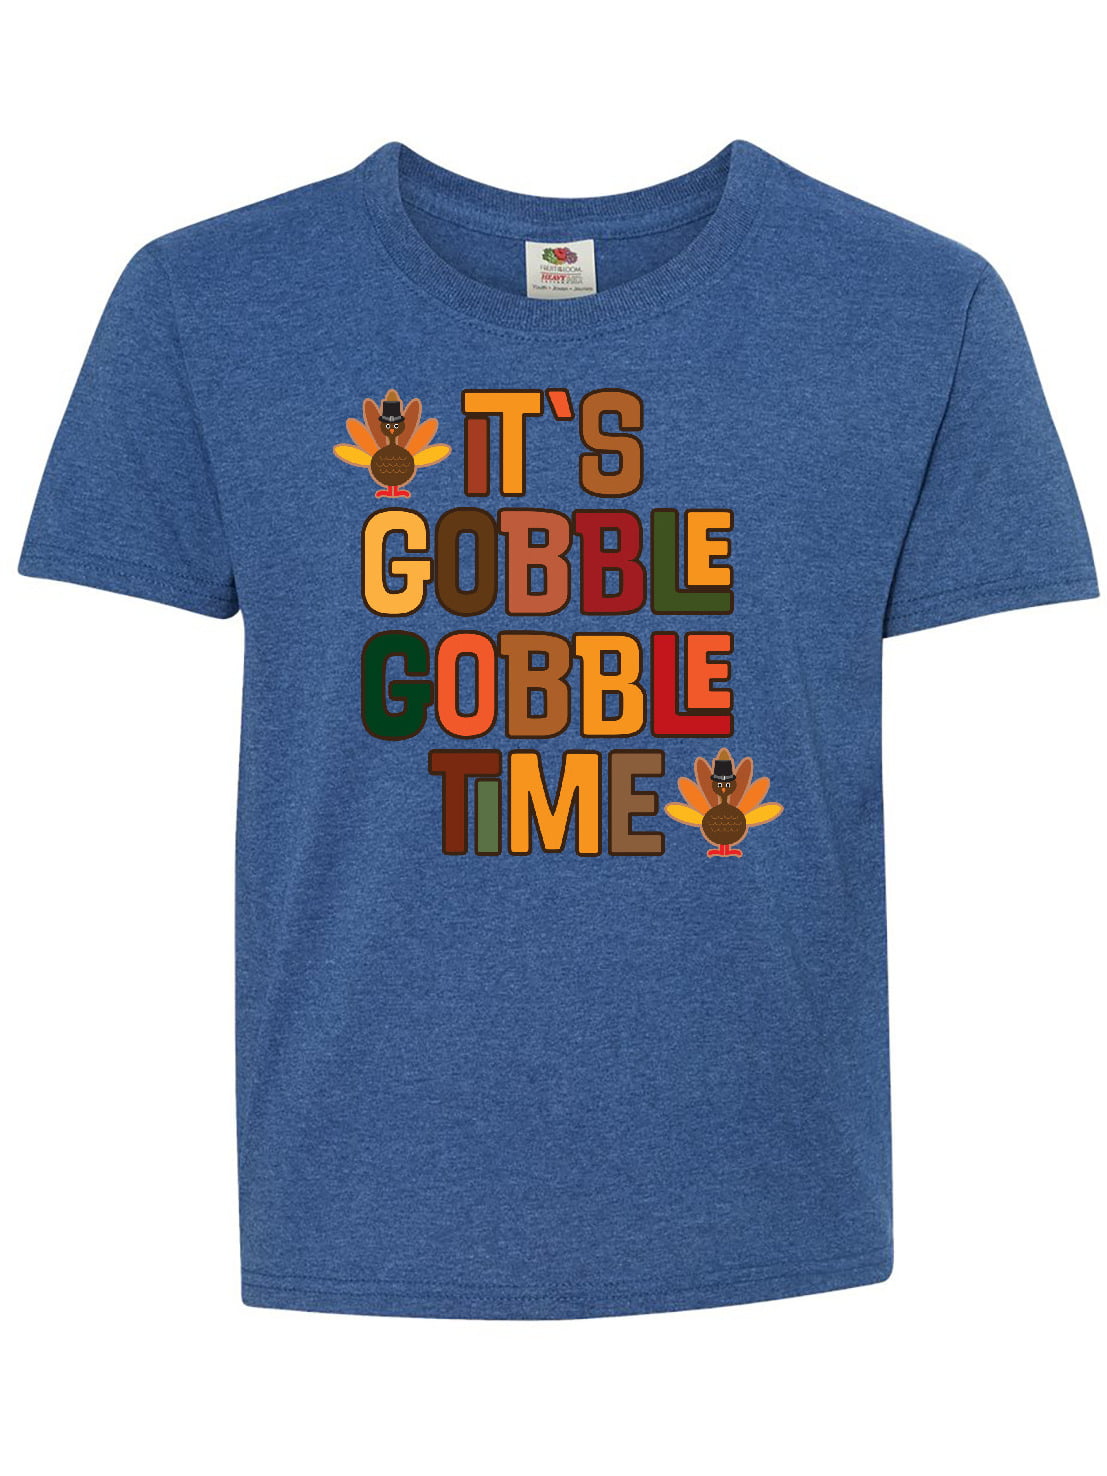 Pilgrim Turkey Face T-Shirt Gobble Gobble Gift Unisex Thanksgiving Dinner Turkey Costume Shirt TShirt on Happy Thanksgiving Day 2021